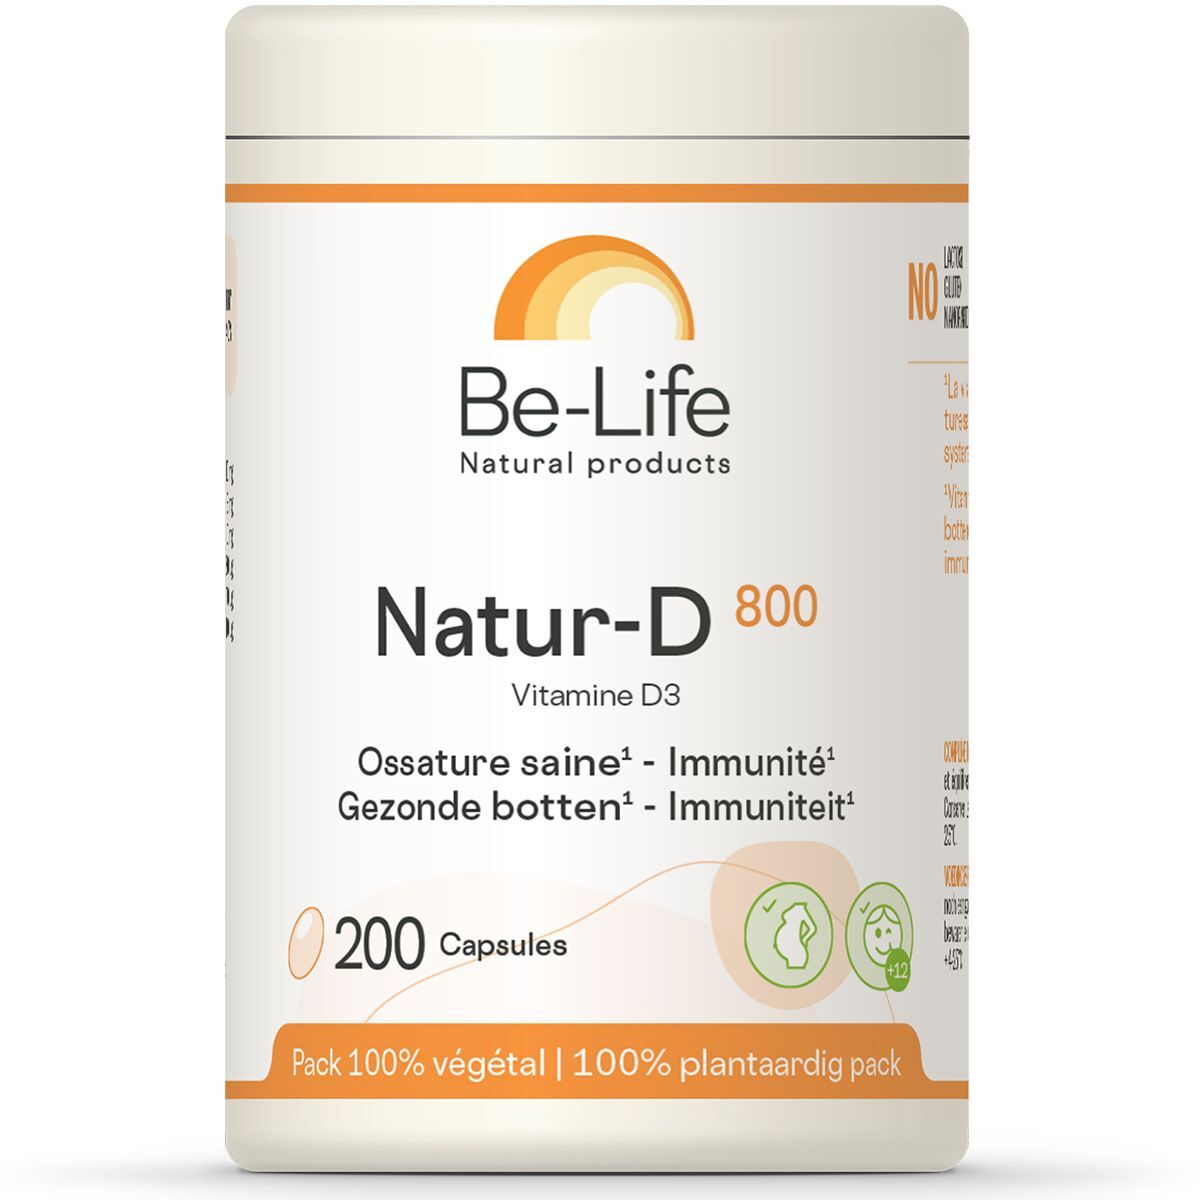 Be-Life Bio-Life Natur-D 800